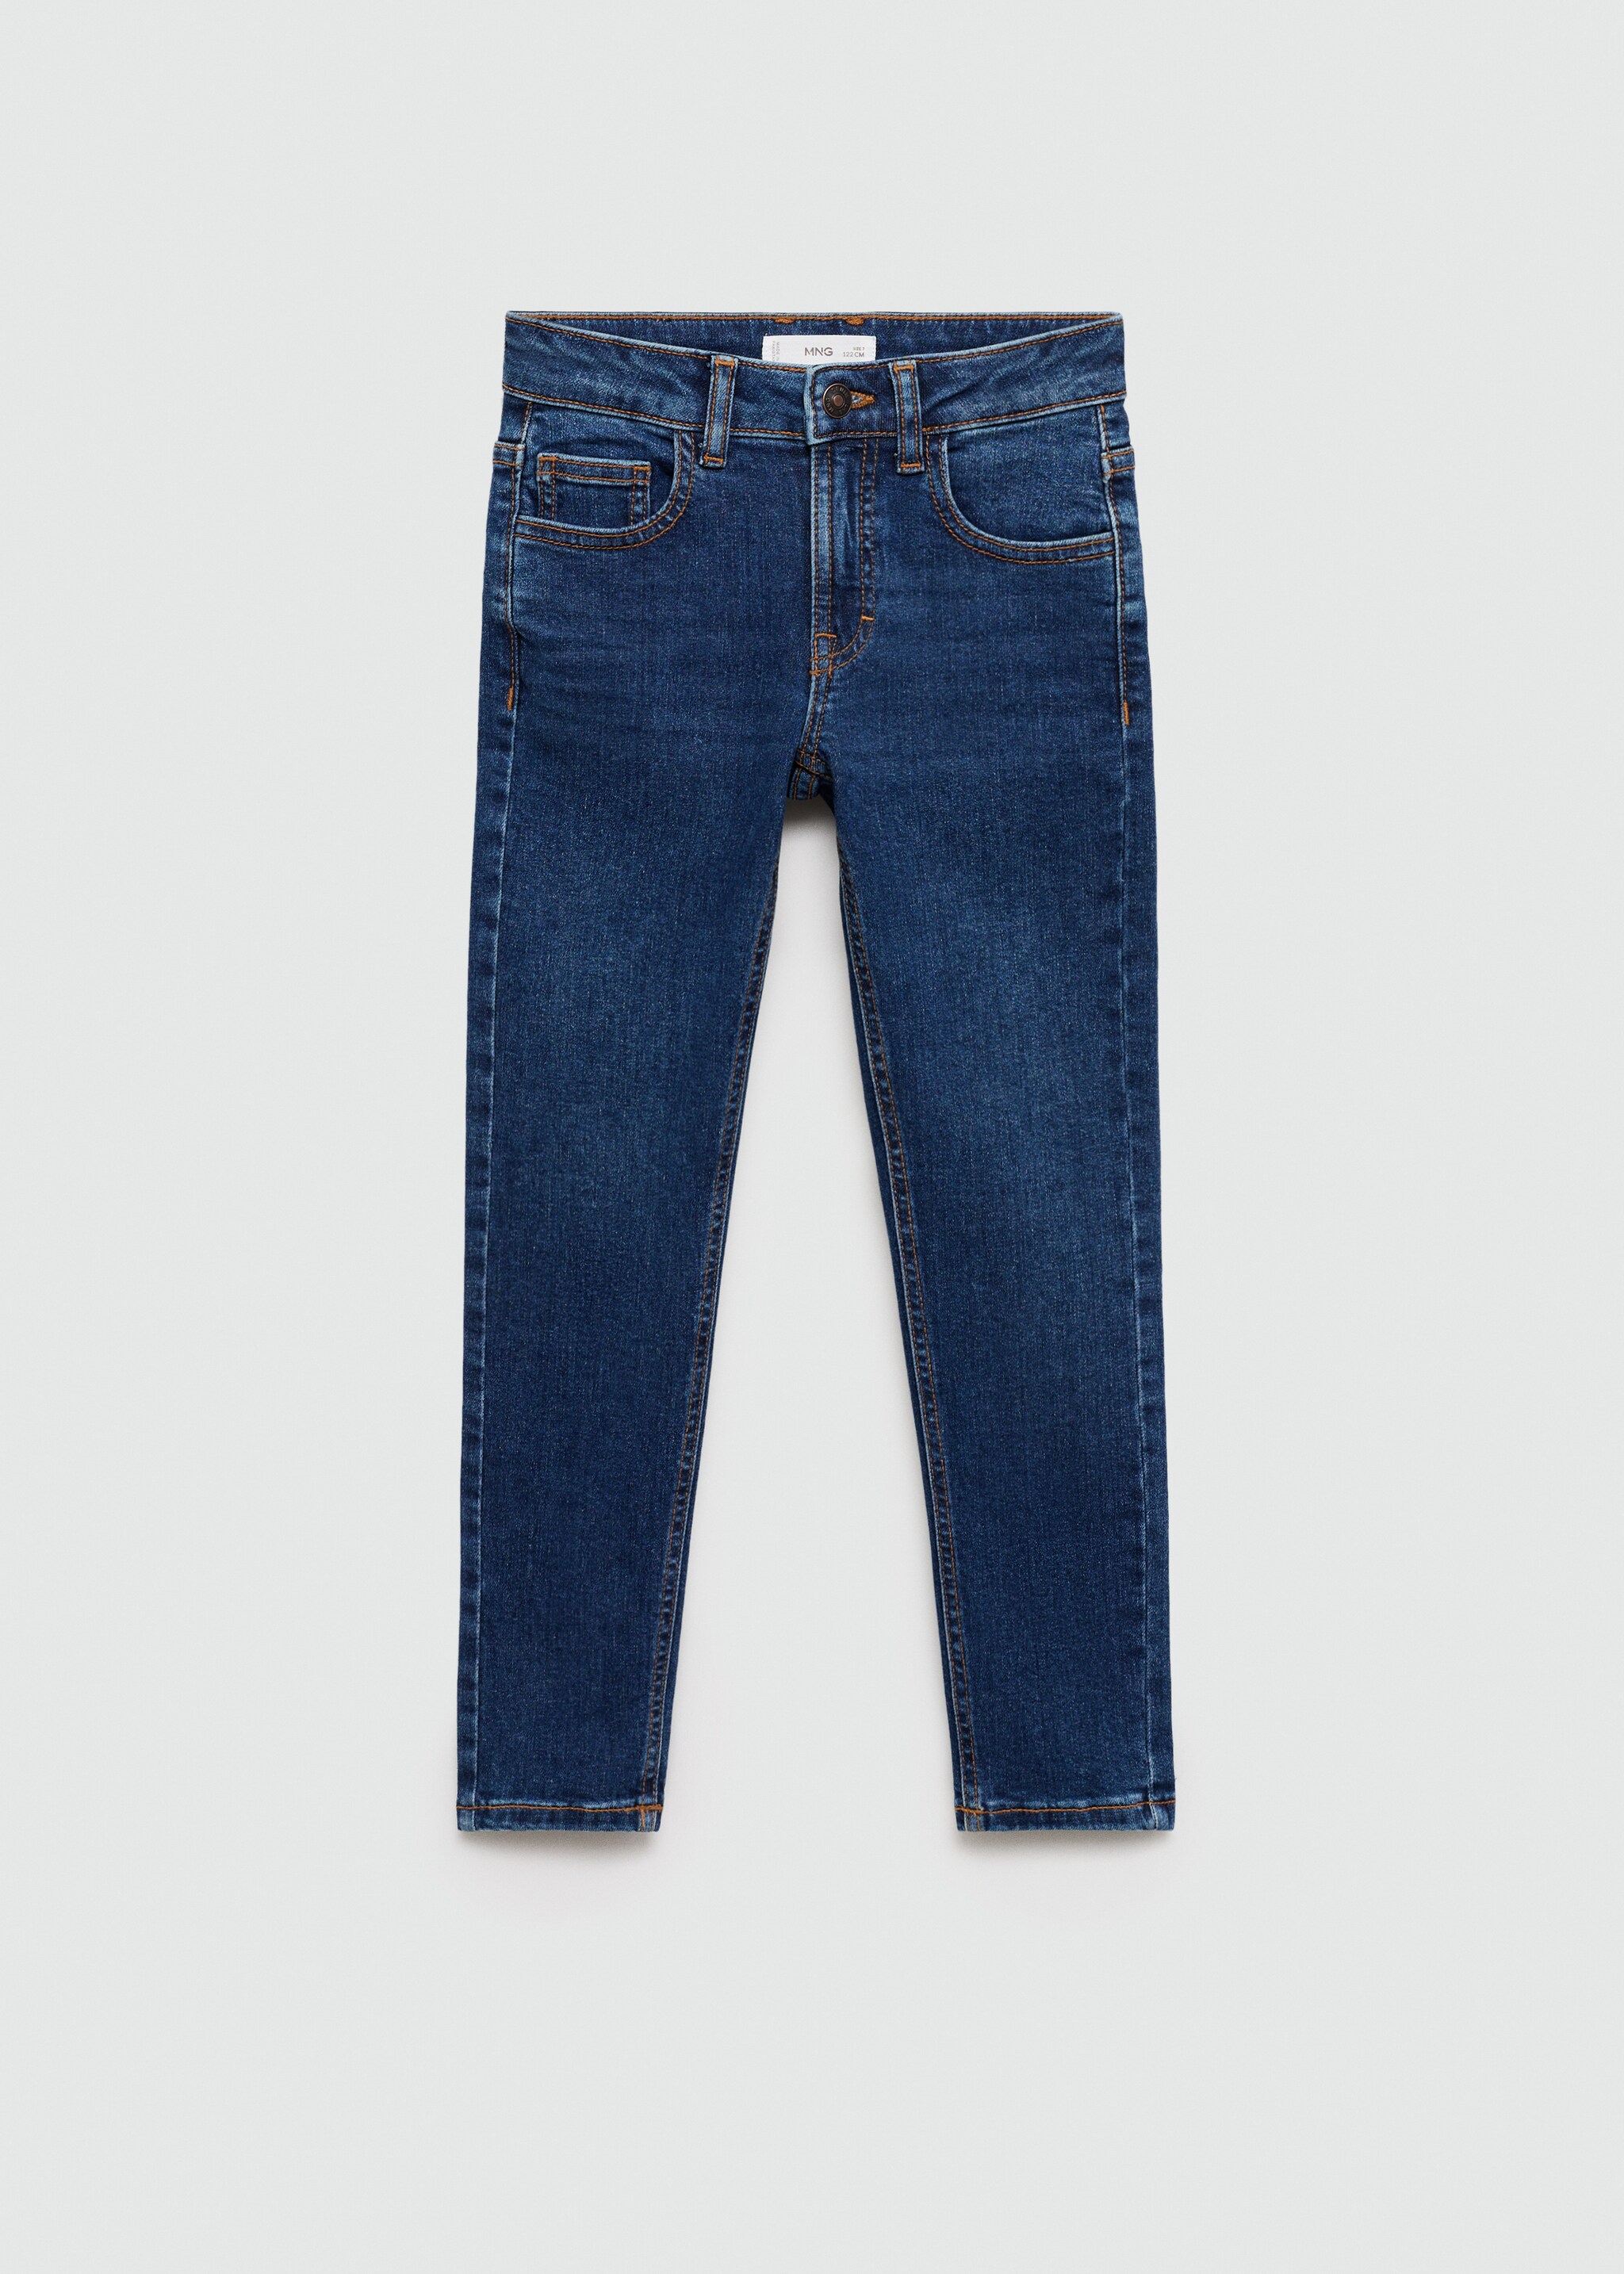 جينز سليم فيت - منتج دون نموذج